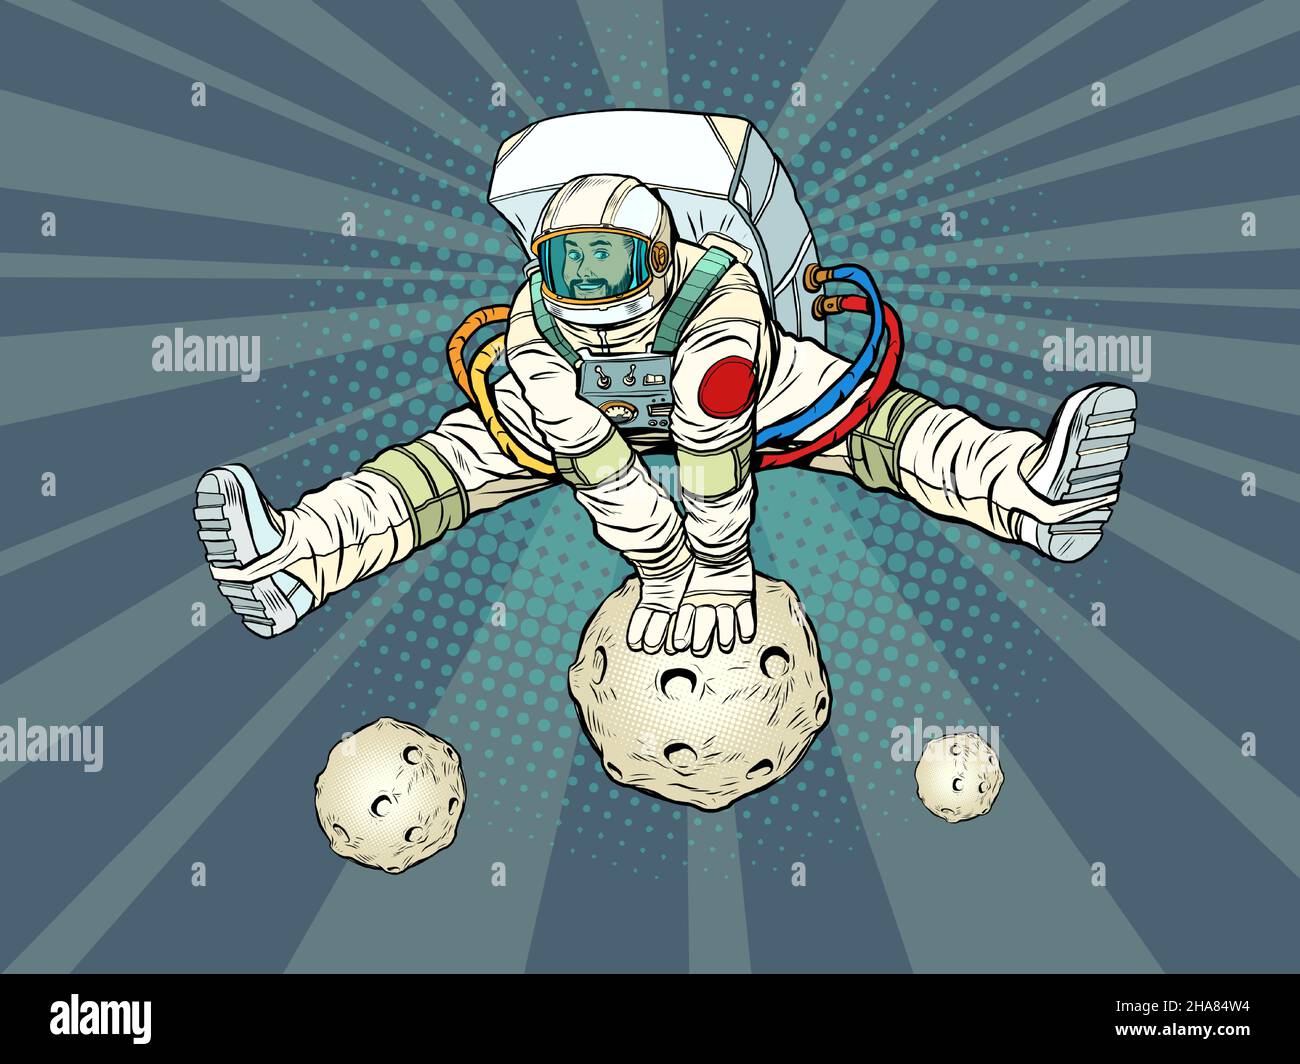 Der Astronaut freut sich, in einer lustigen Pose mit auseinander stehenden Beinen durch einen Planeten oder einen Planeten zu springen. Raumfahrt und Wissenschaft Stock Vektor